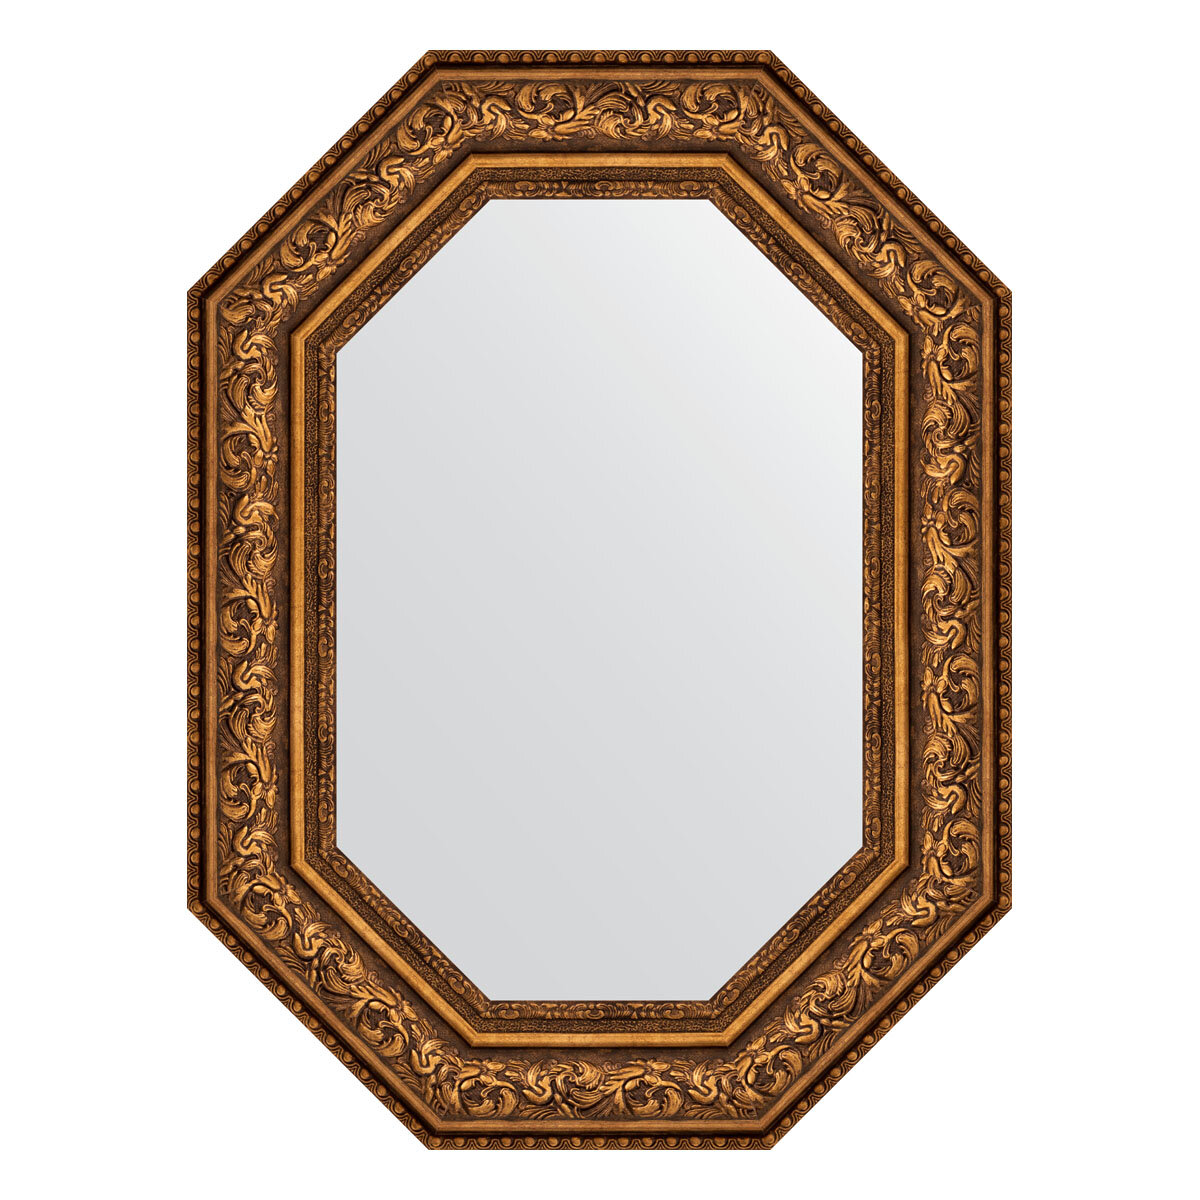 Зеркало настенное Polygon EVOFORM в багетной раме виньетка состаренная бронза, 60х80 см, для гостиной, прихожей, спальни и ванной комнаты, BY 7257